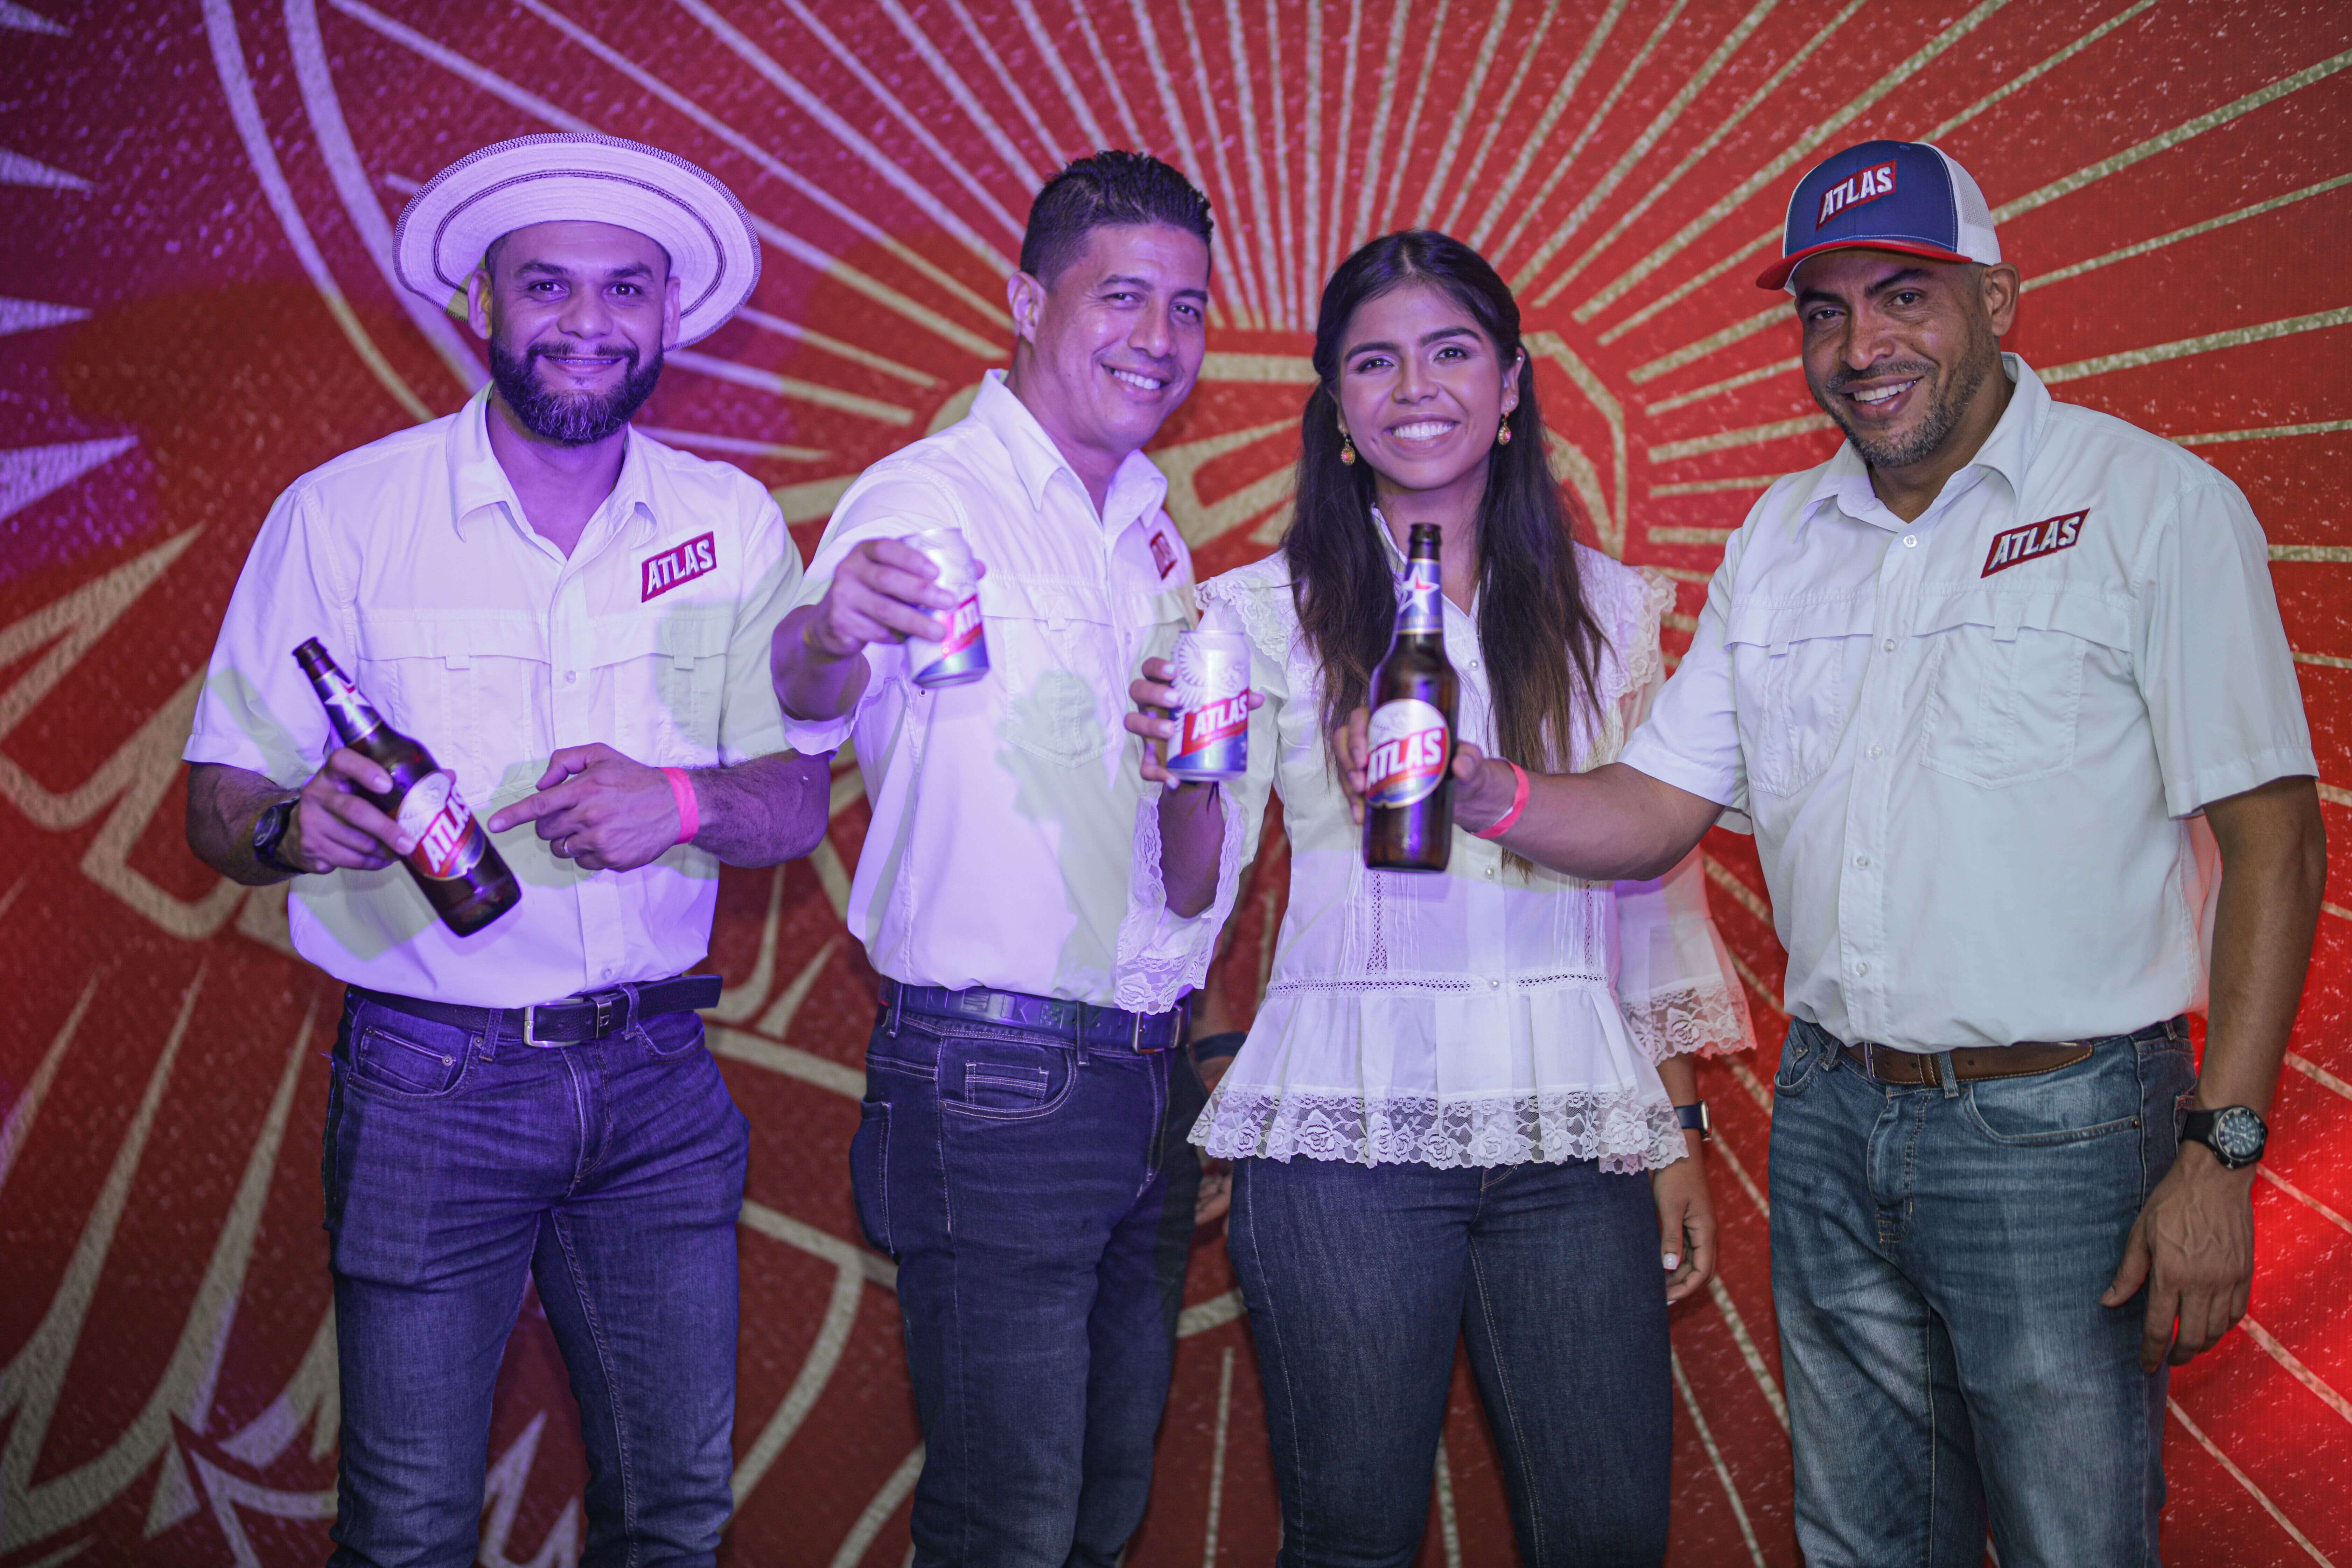 Cervecería Nacional renueva la imagen de su icónica cerveza Atlas cervecería nacional panamá